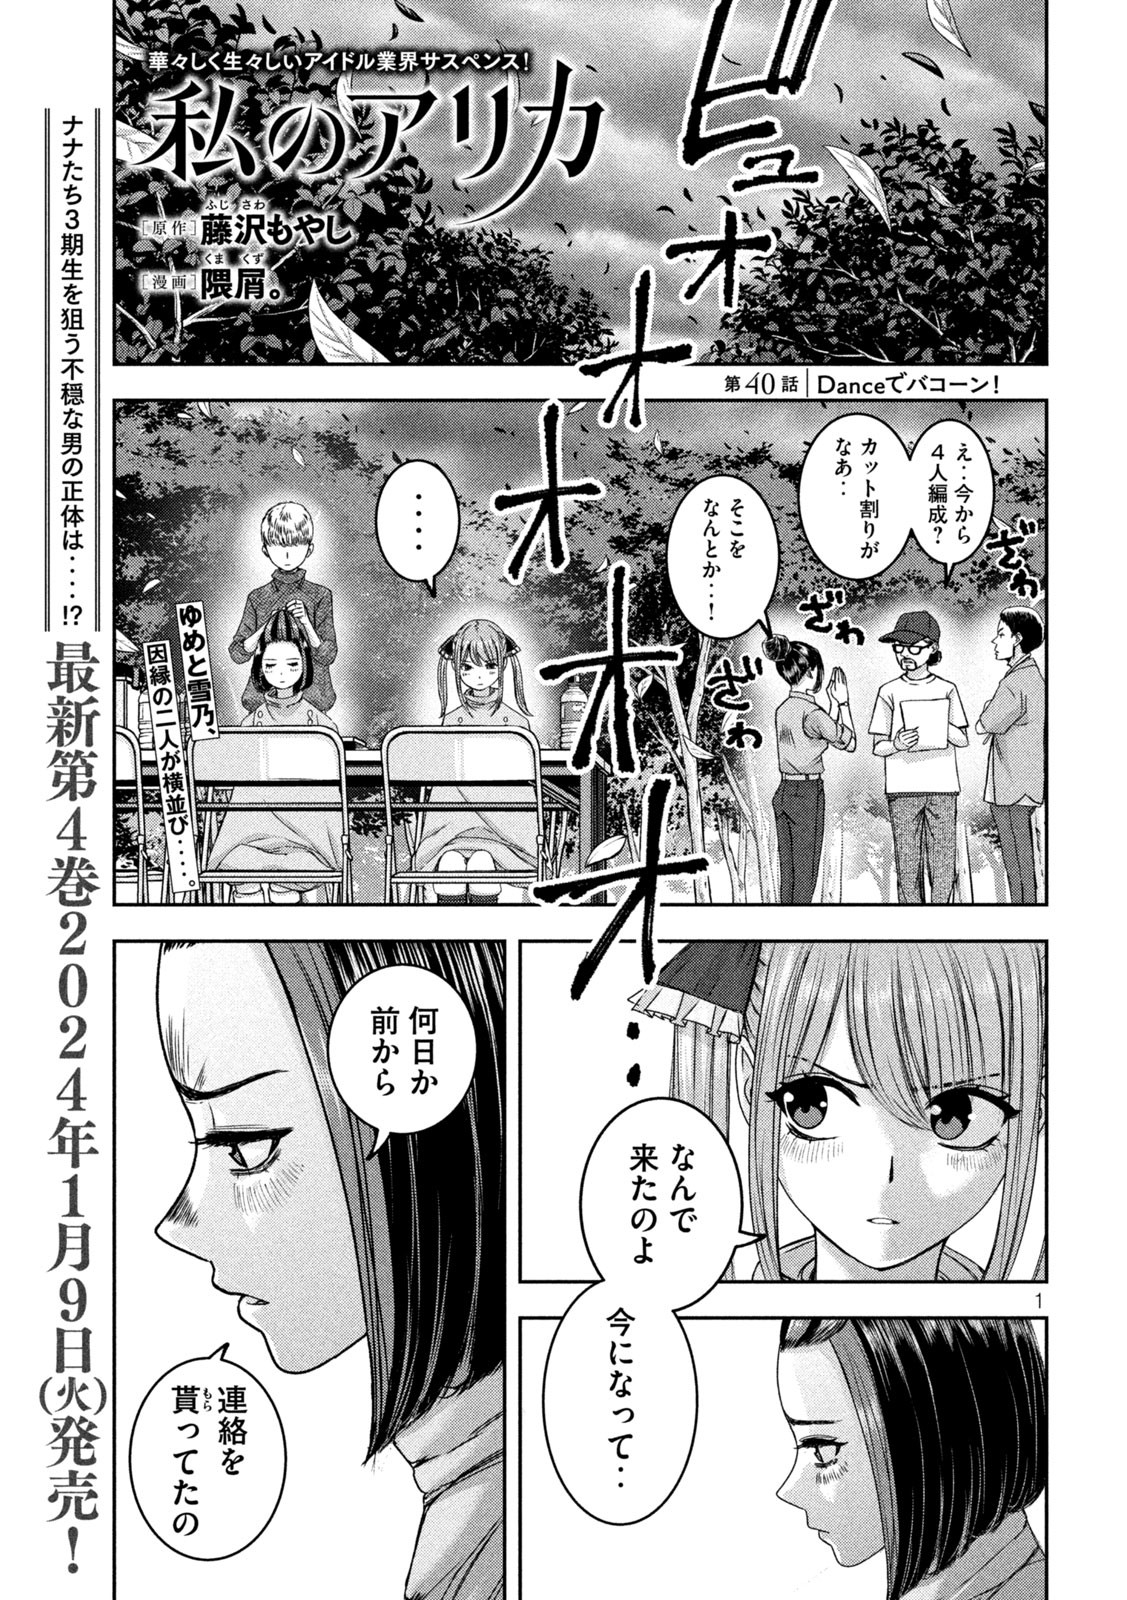 Watashi no Arika - Chapter 40 - Page 1